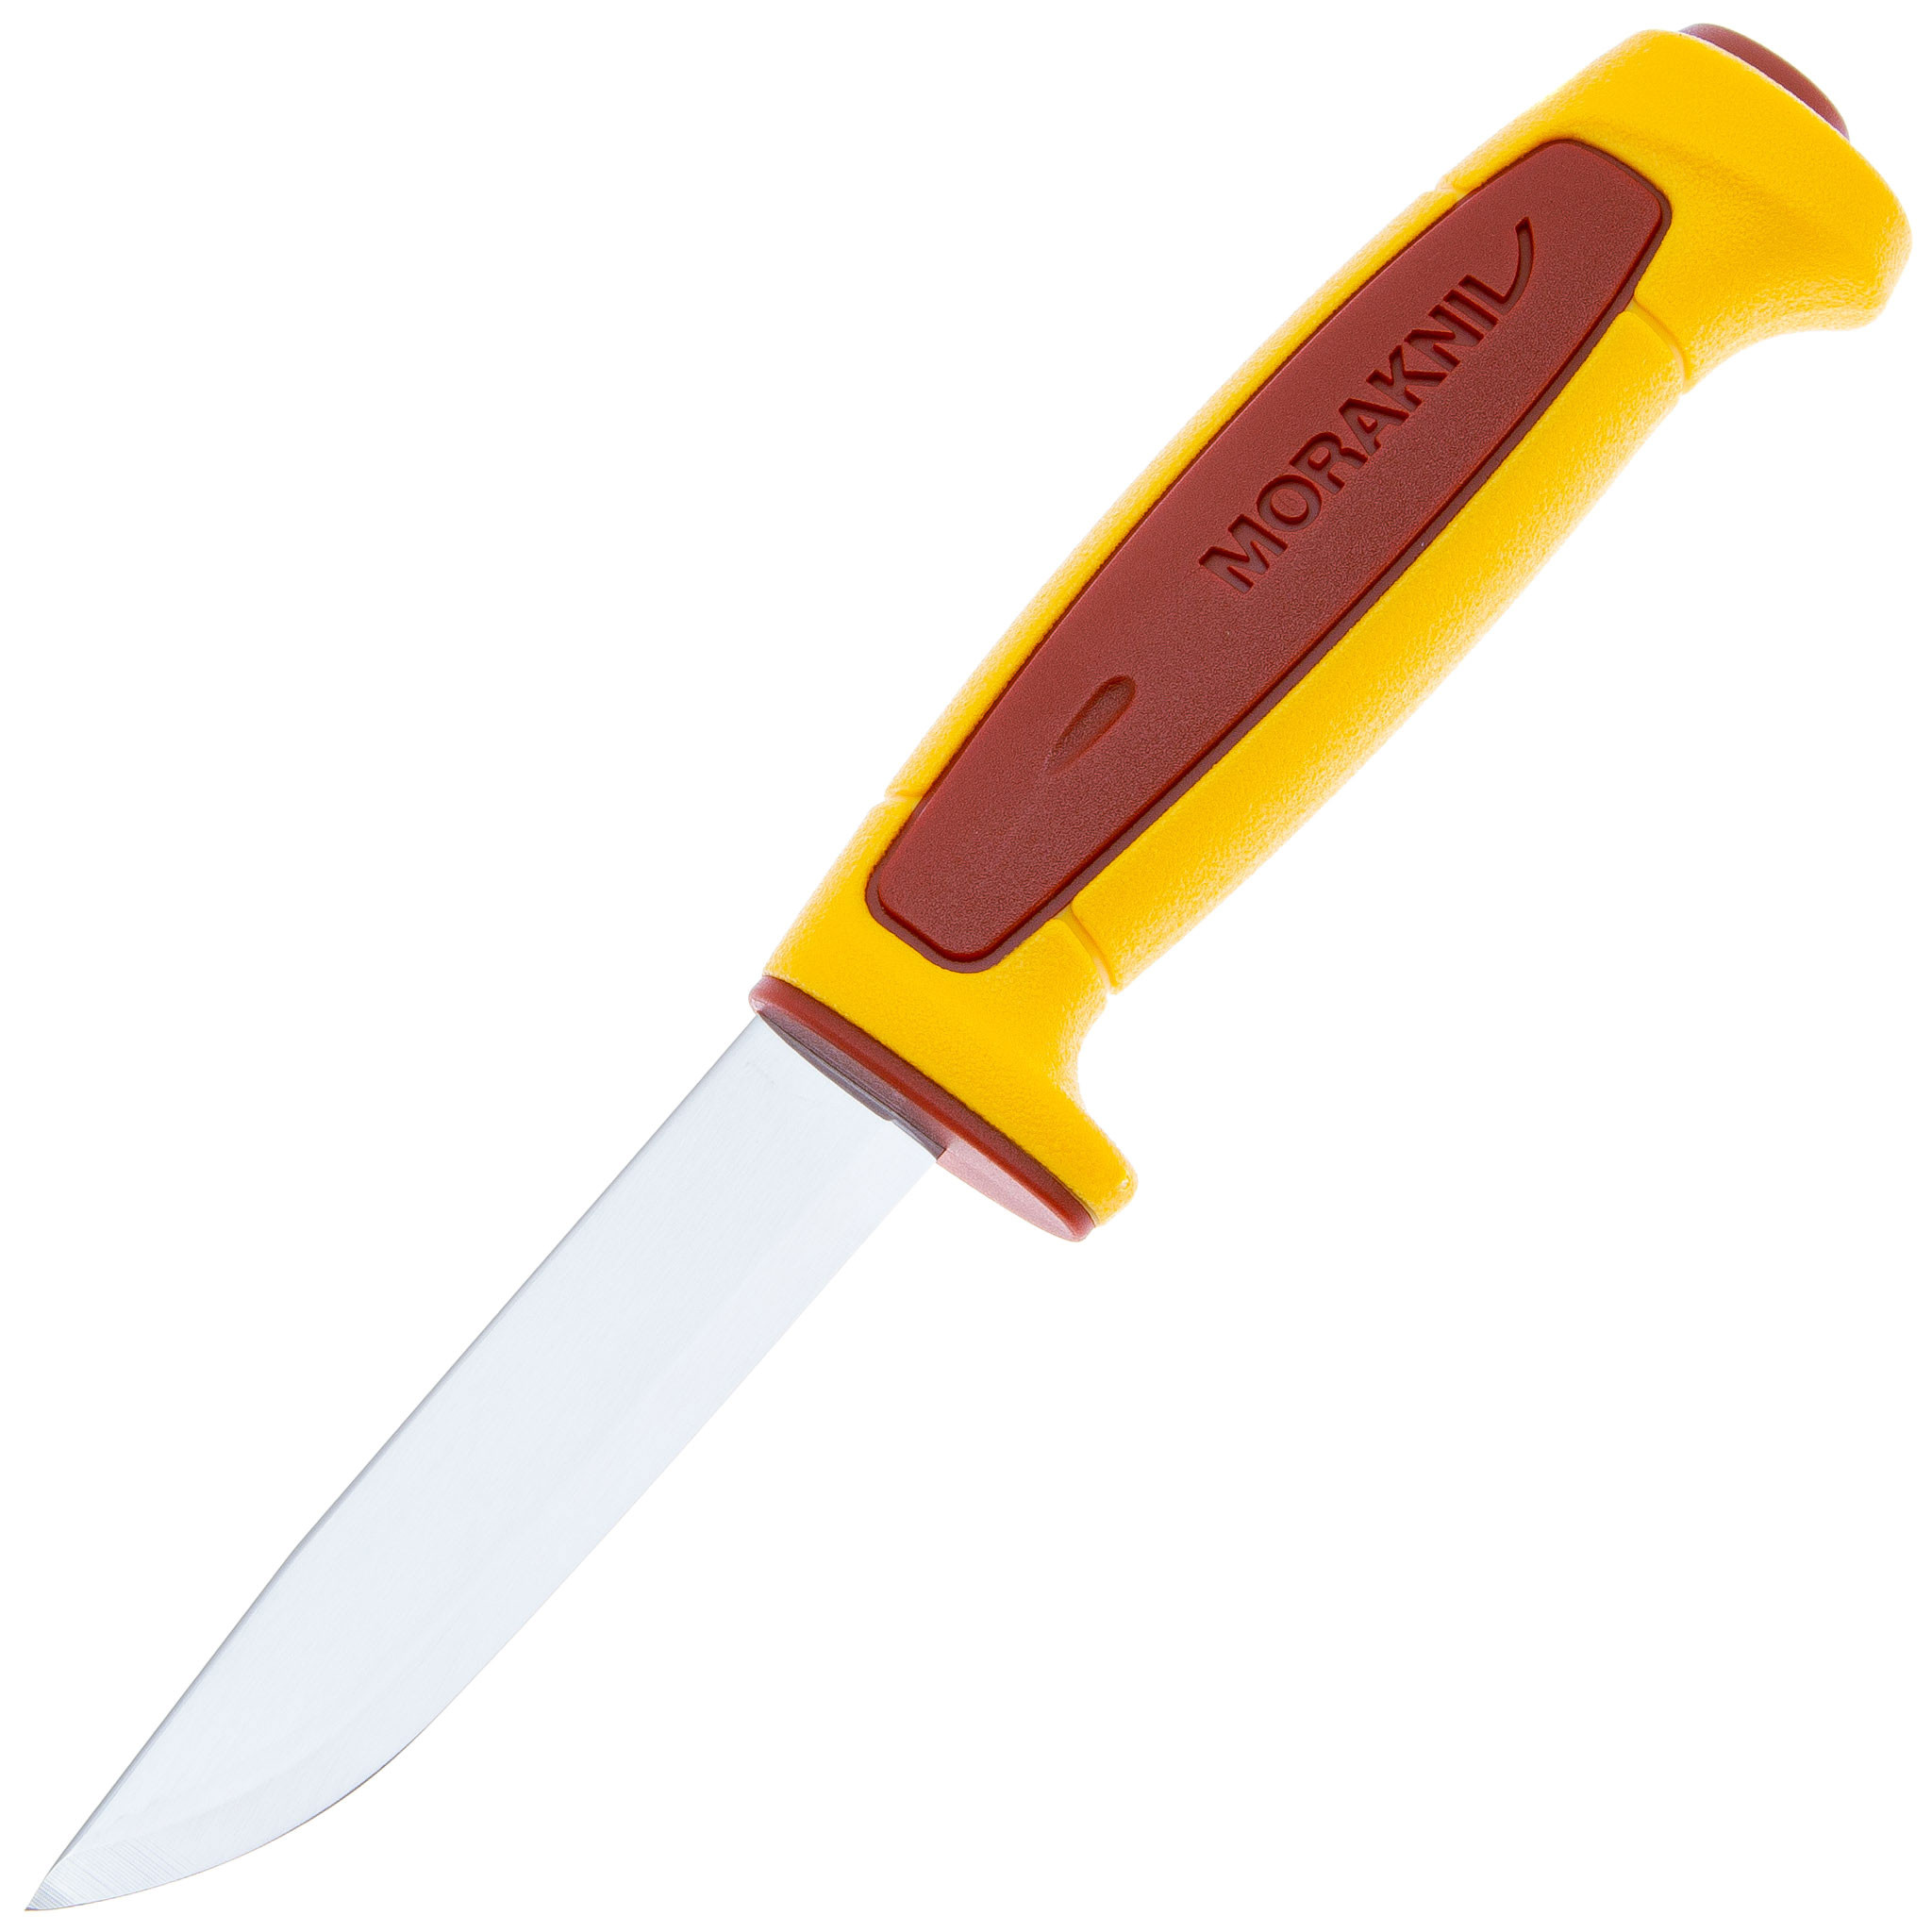 Нож с фиксированным лезвием Morakniv Basic 546, 2023, сталь Sandvik 12C27, рукоять пластик, yellow/red